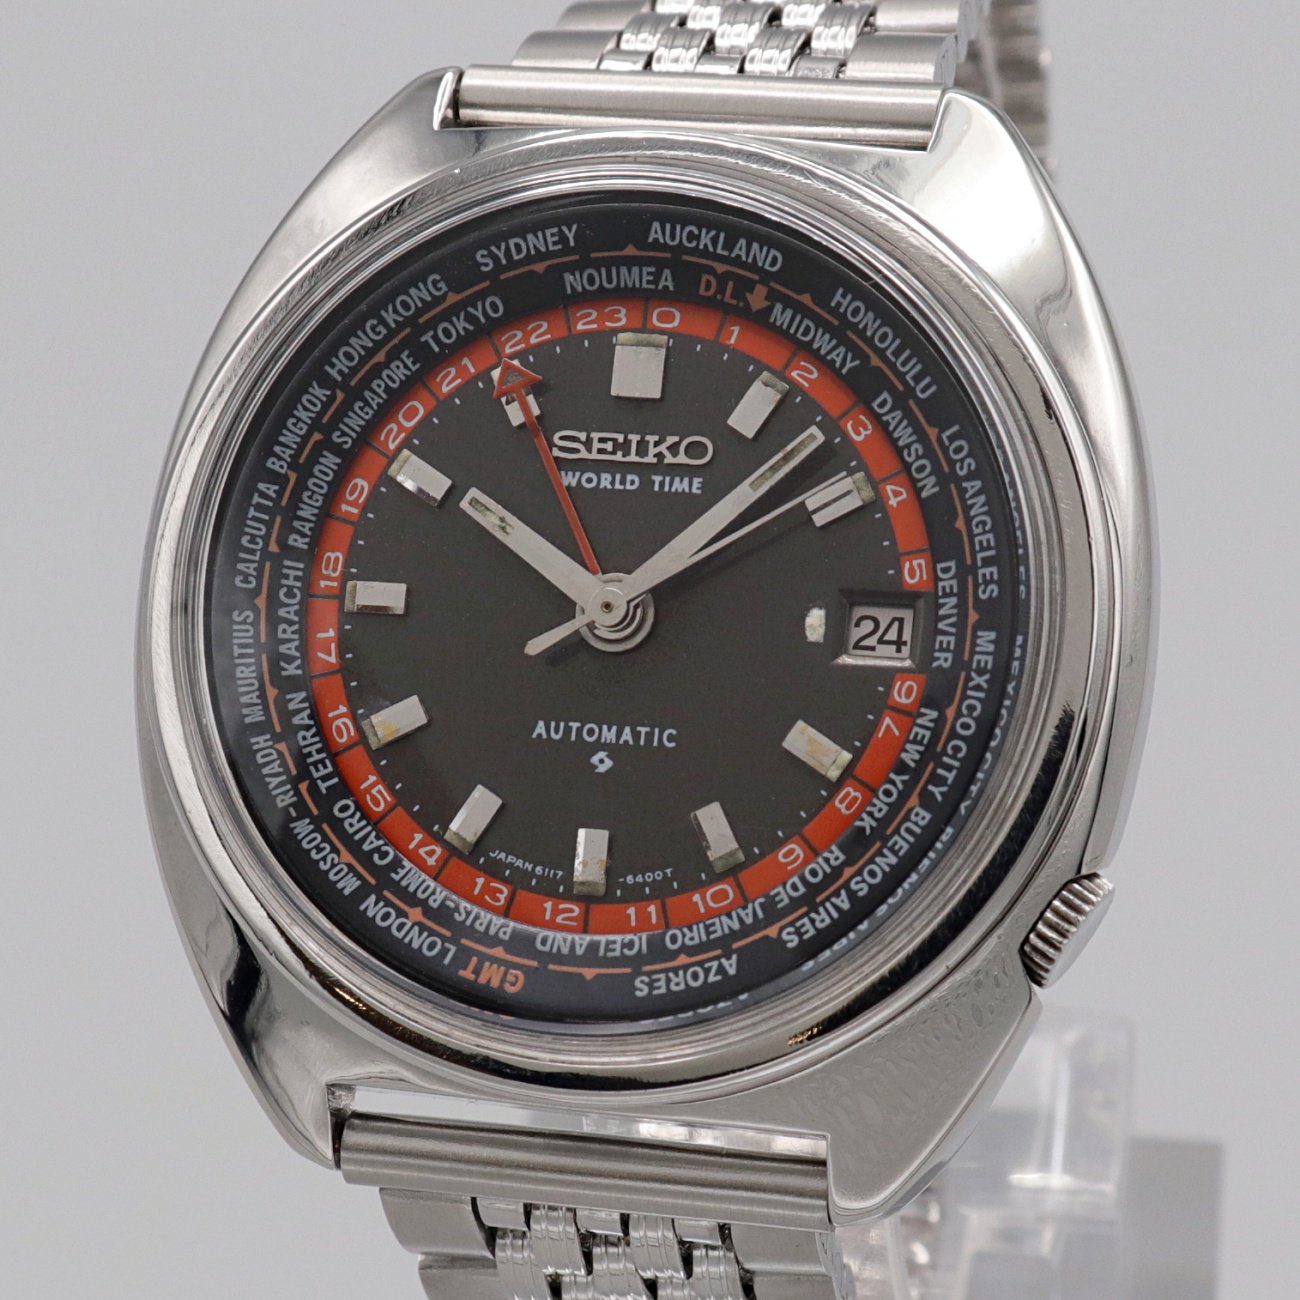 31,212円【訳あり】セイコー6117-6400ワールドタイム腕時計メンズ自動巻き70年代